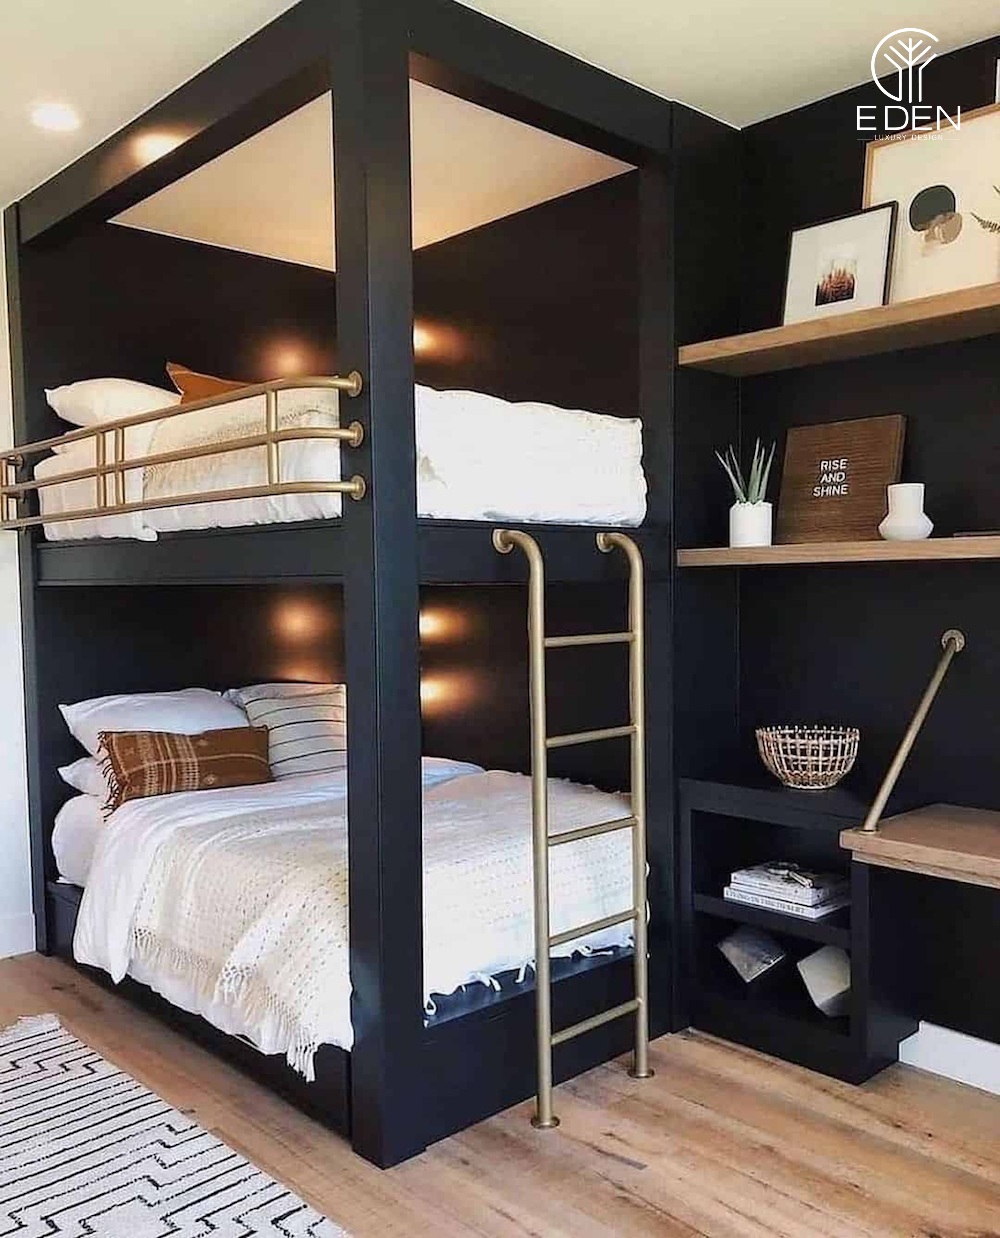 Mẫu giường tầng gỗ người lớn sơn xanh vô cùng trẻ trung và hiện đại